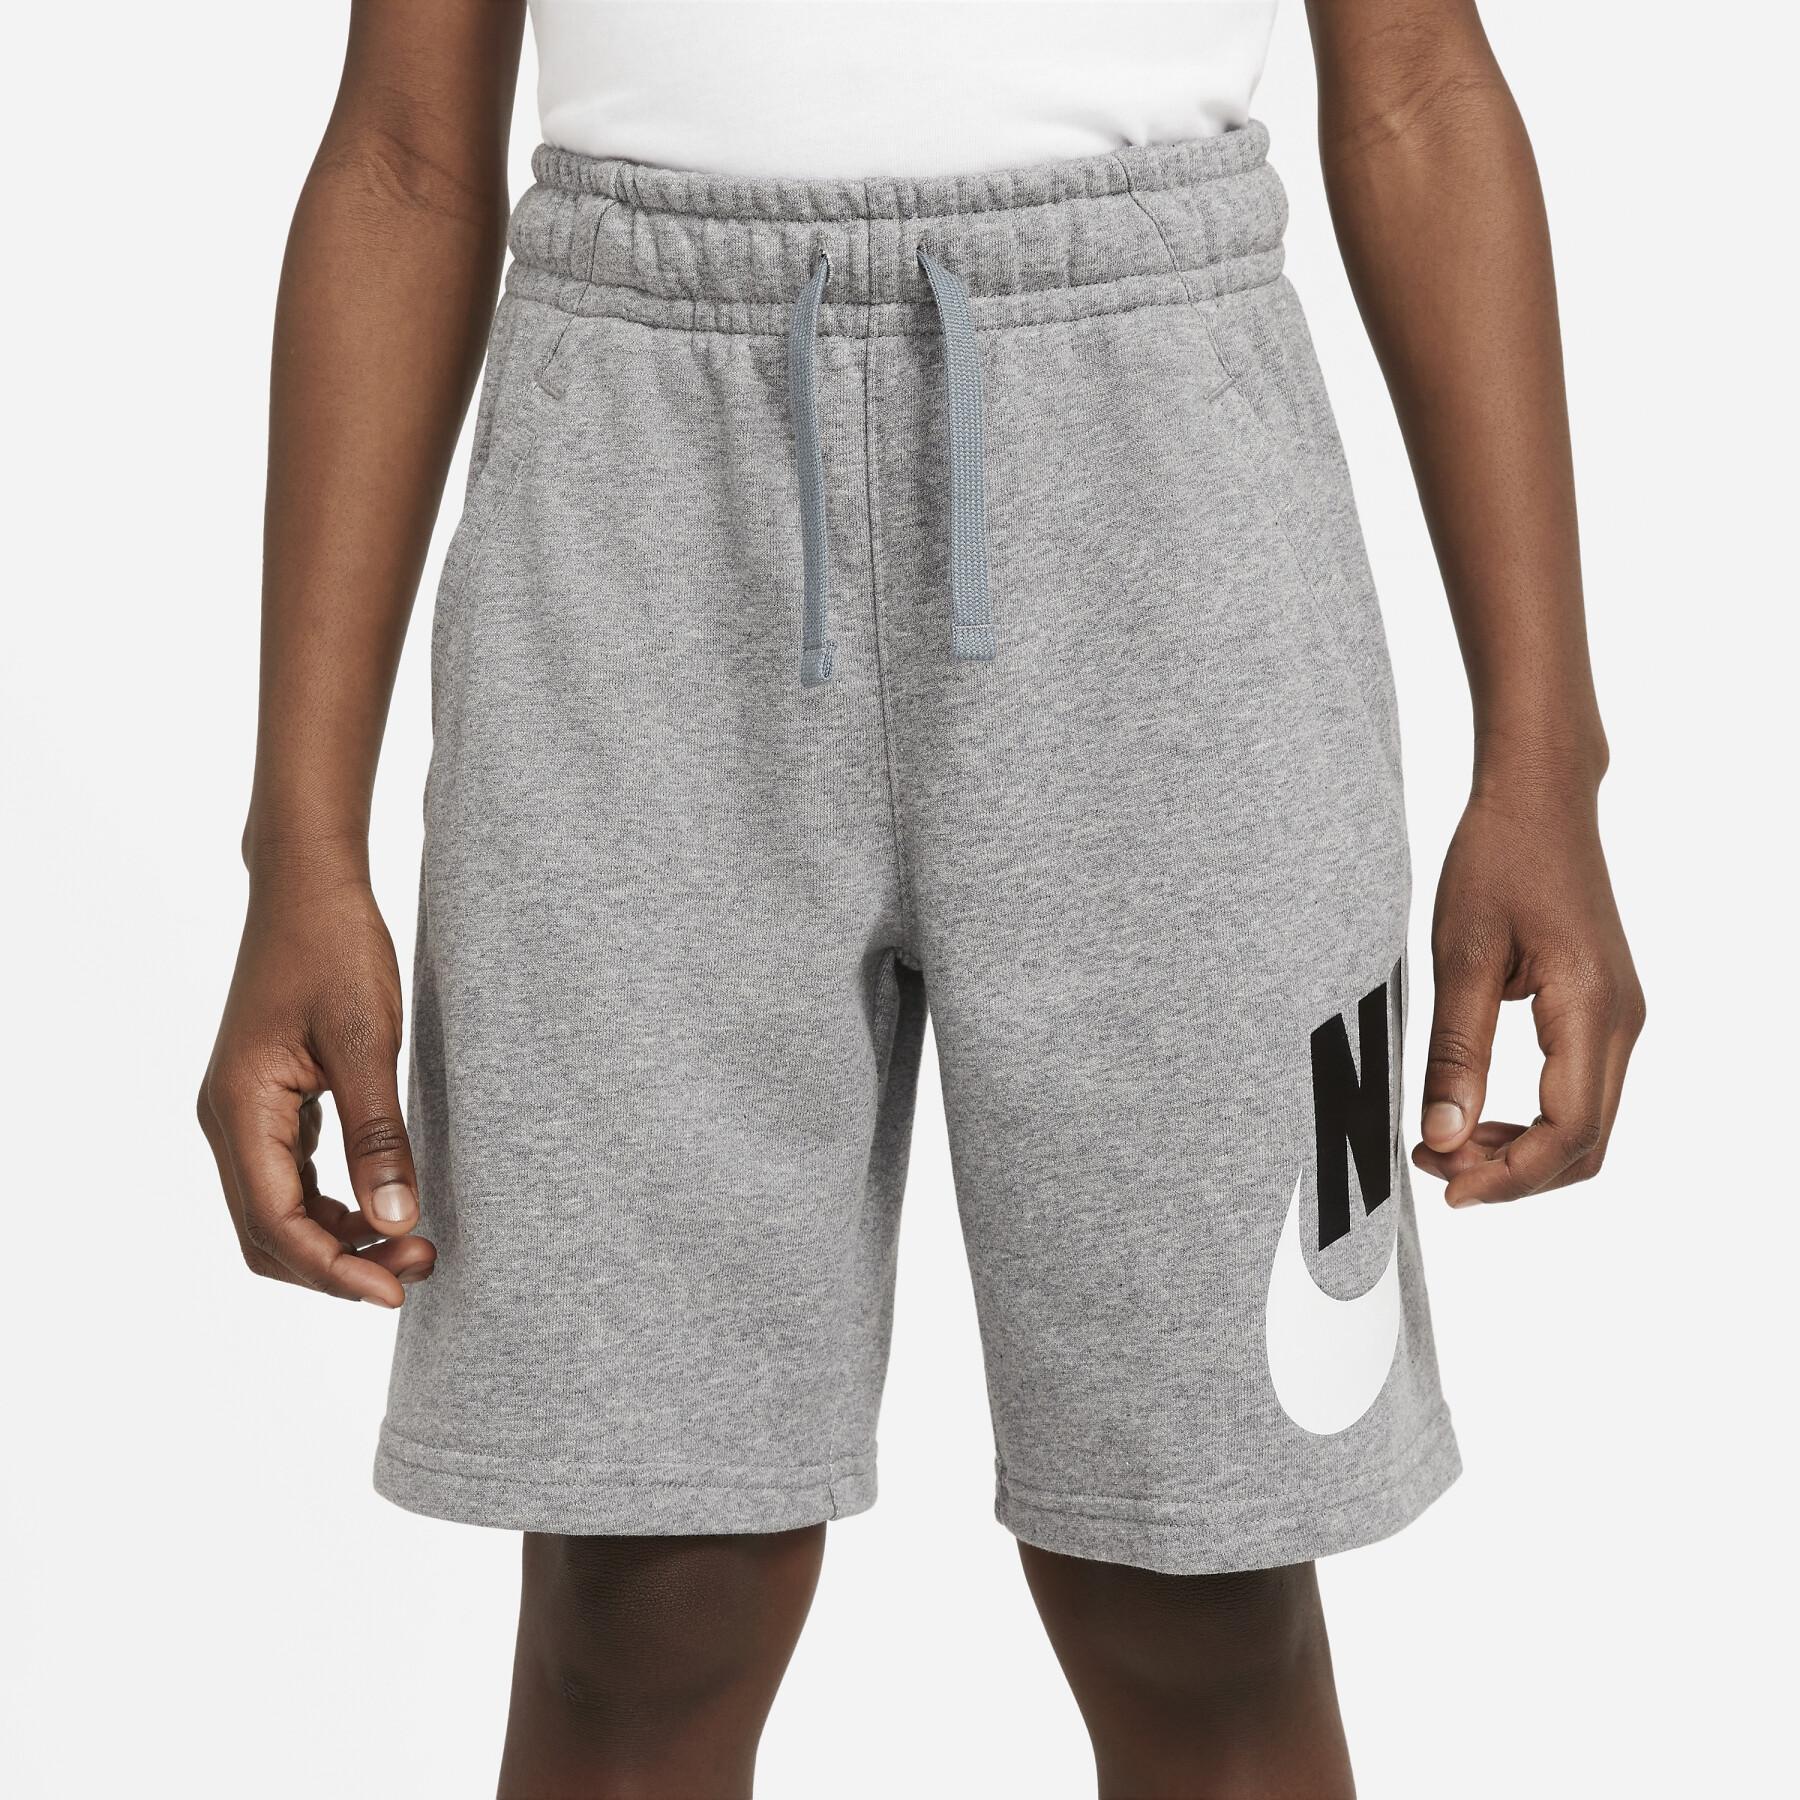 Children's shorts Nike Sportswear Club Fleece